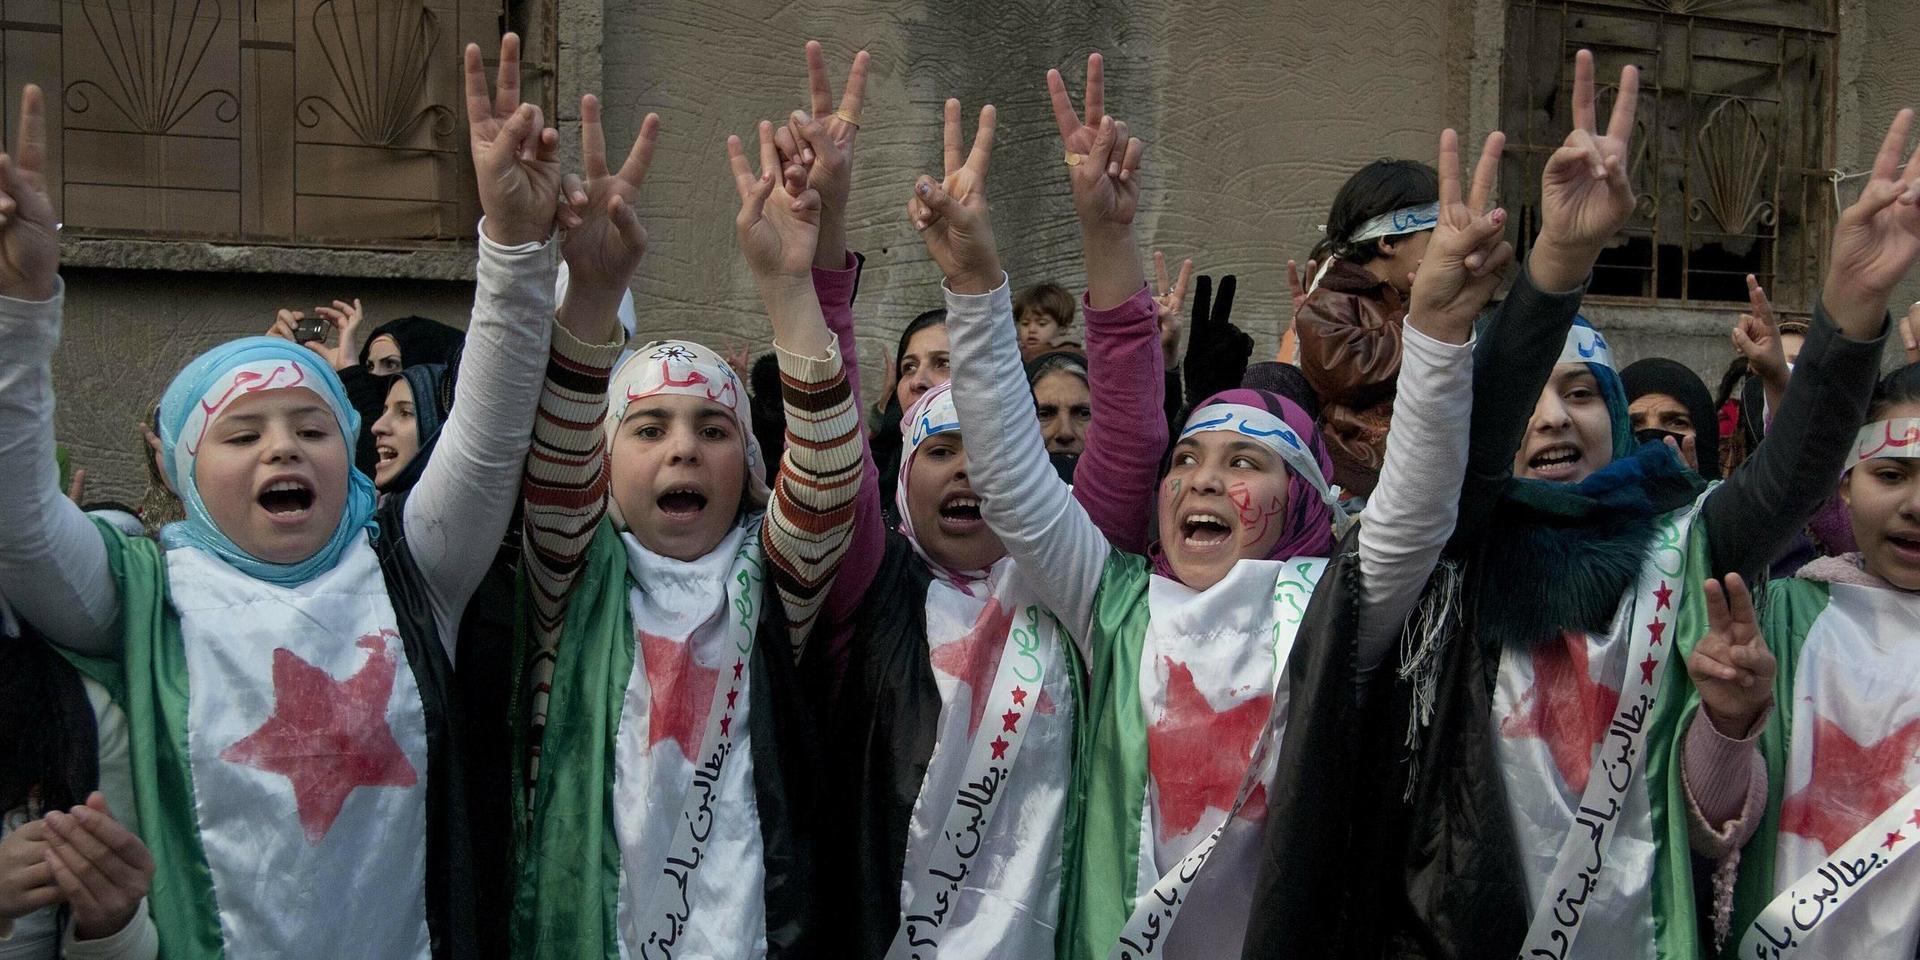 Regimkritiska demonstranter under en protest i Homs i Syrien 2011. Arkivbild.